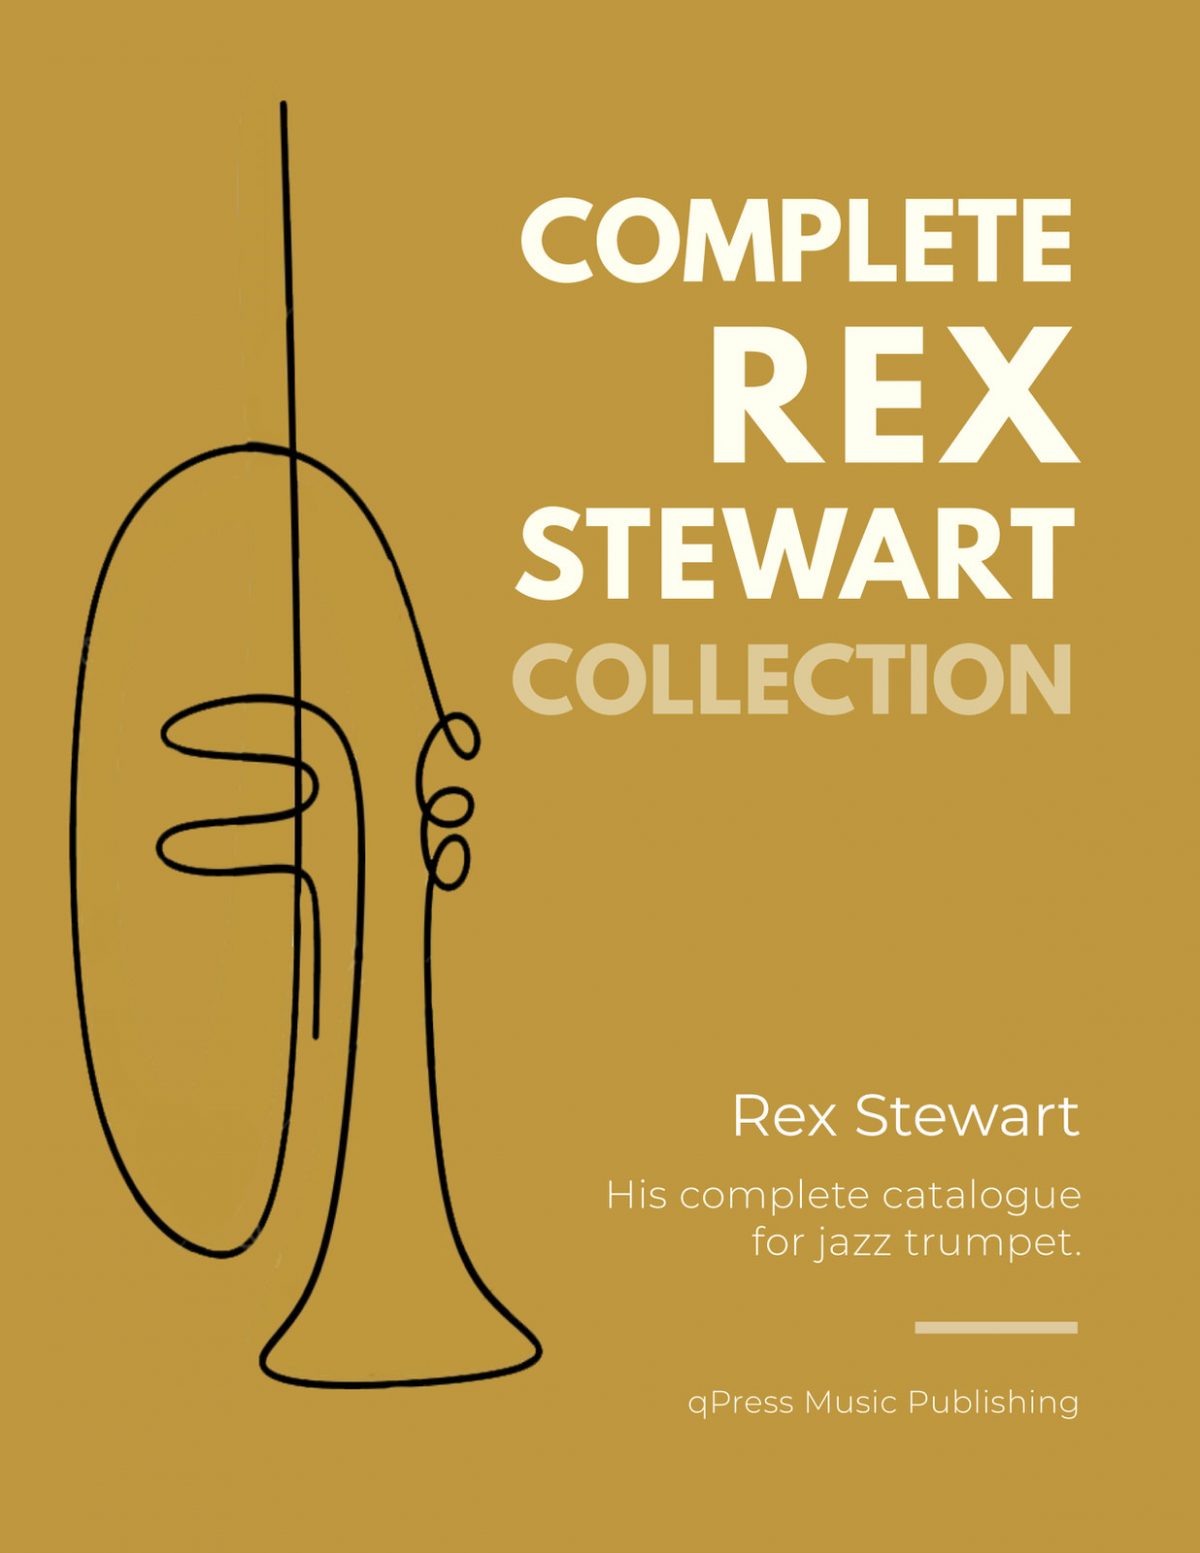 Complete Rex Stewart Collection